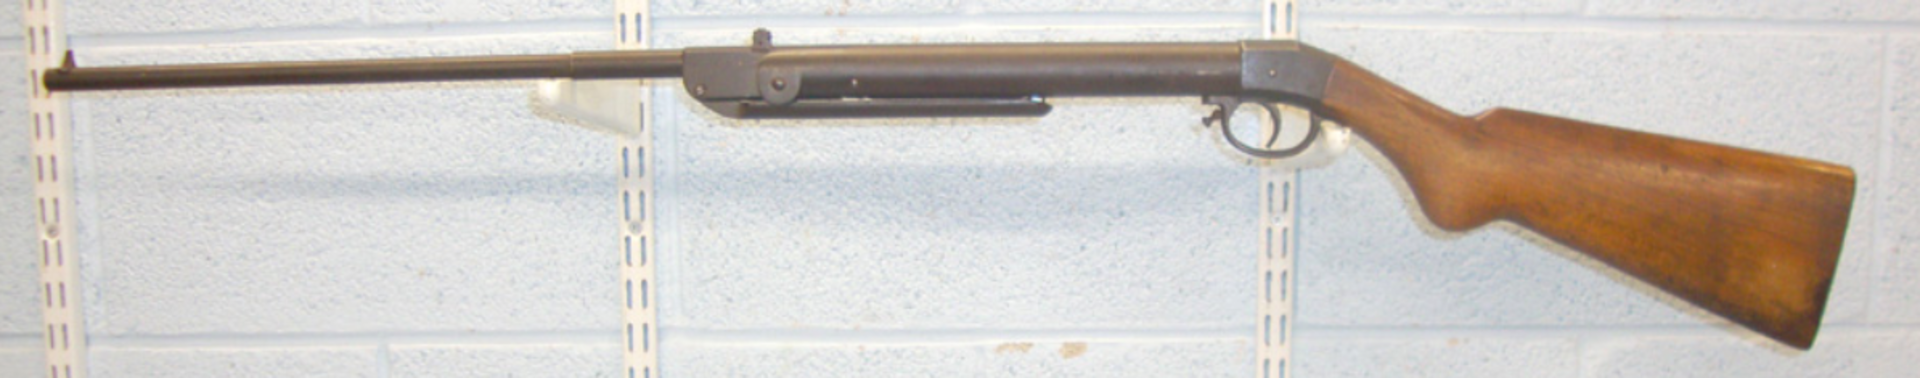 1925-1938, German Haenel Model II D.R.P. .177 Calibre Break Action Air Rifle. - Image 3 of 3